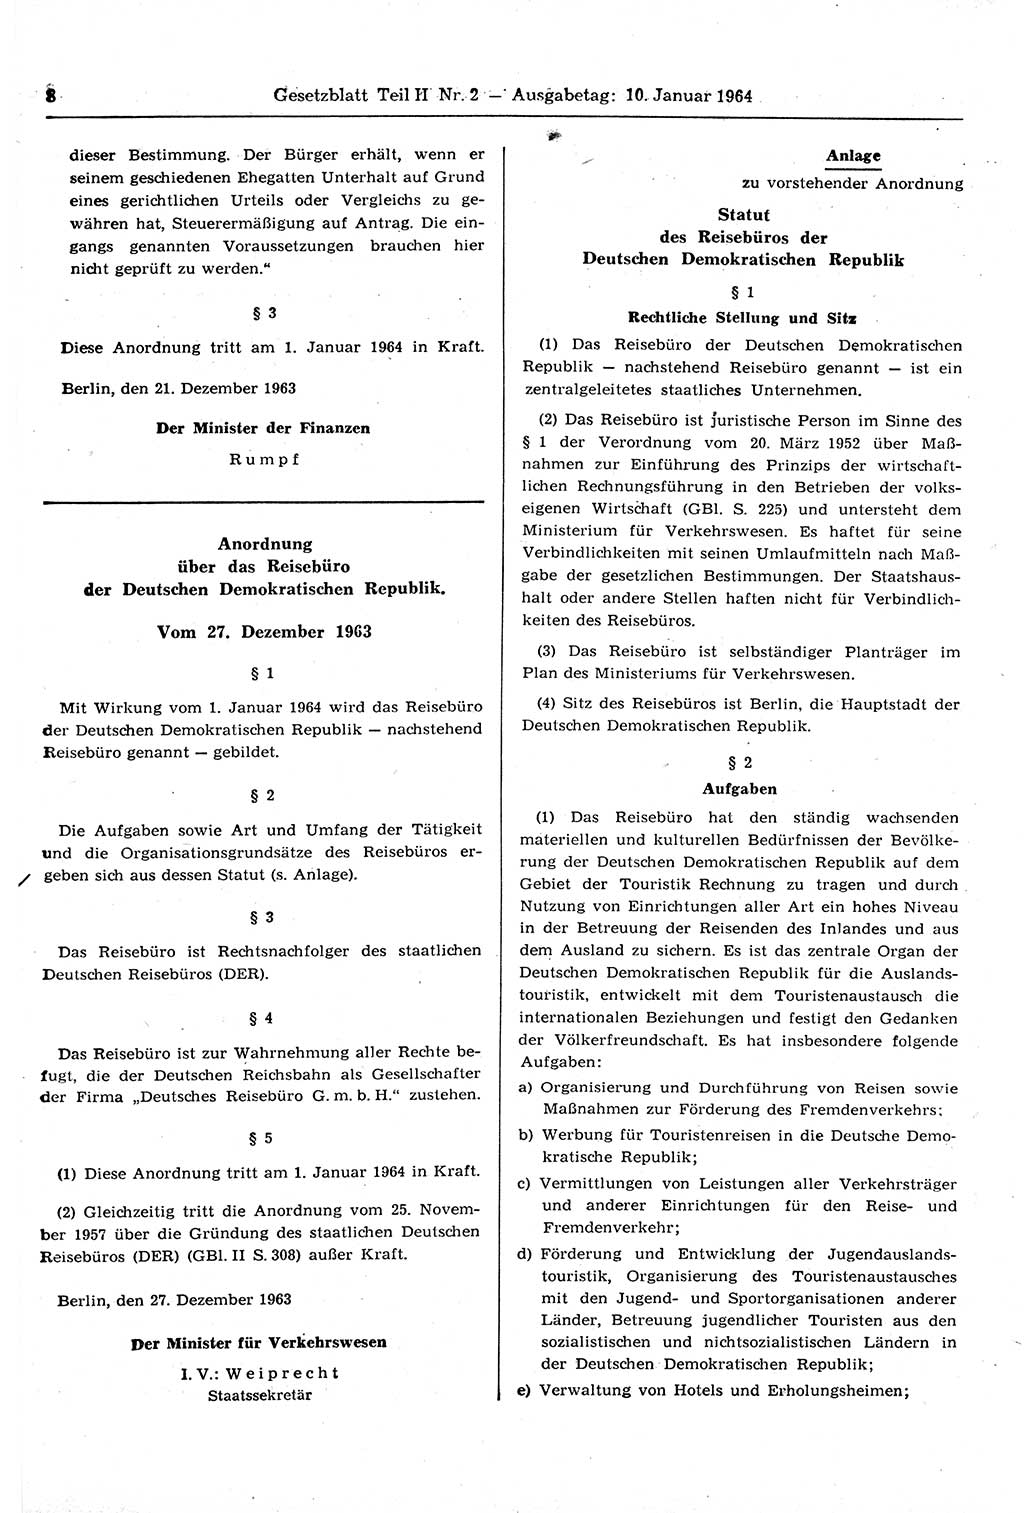 Gesetzblatt (GBl.) der Deutschen Demokratischen Republik (DDR) Teil ⅠⅠ 1964, Seite 8 (GBl. DDR ⅠⅠ 1964, S. 8)